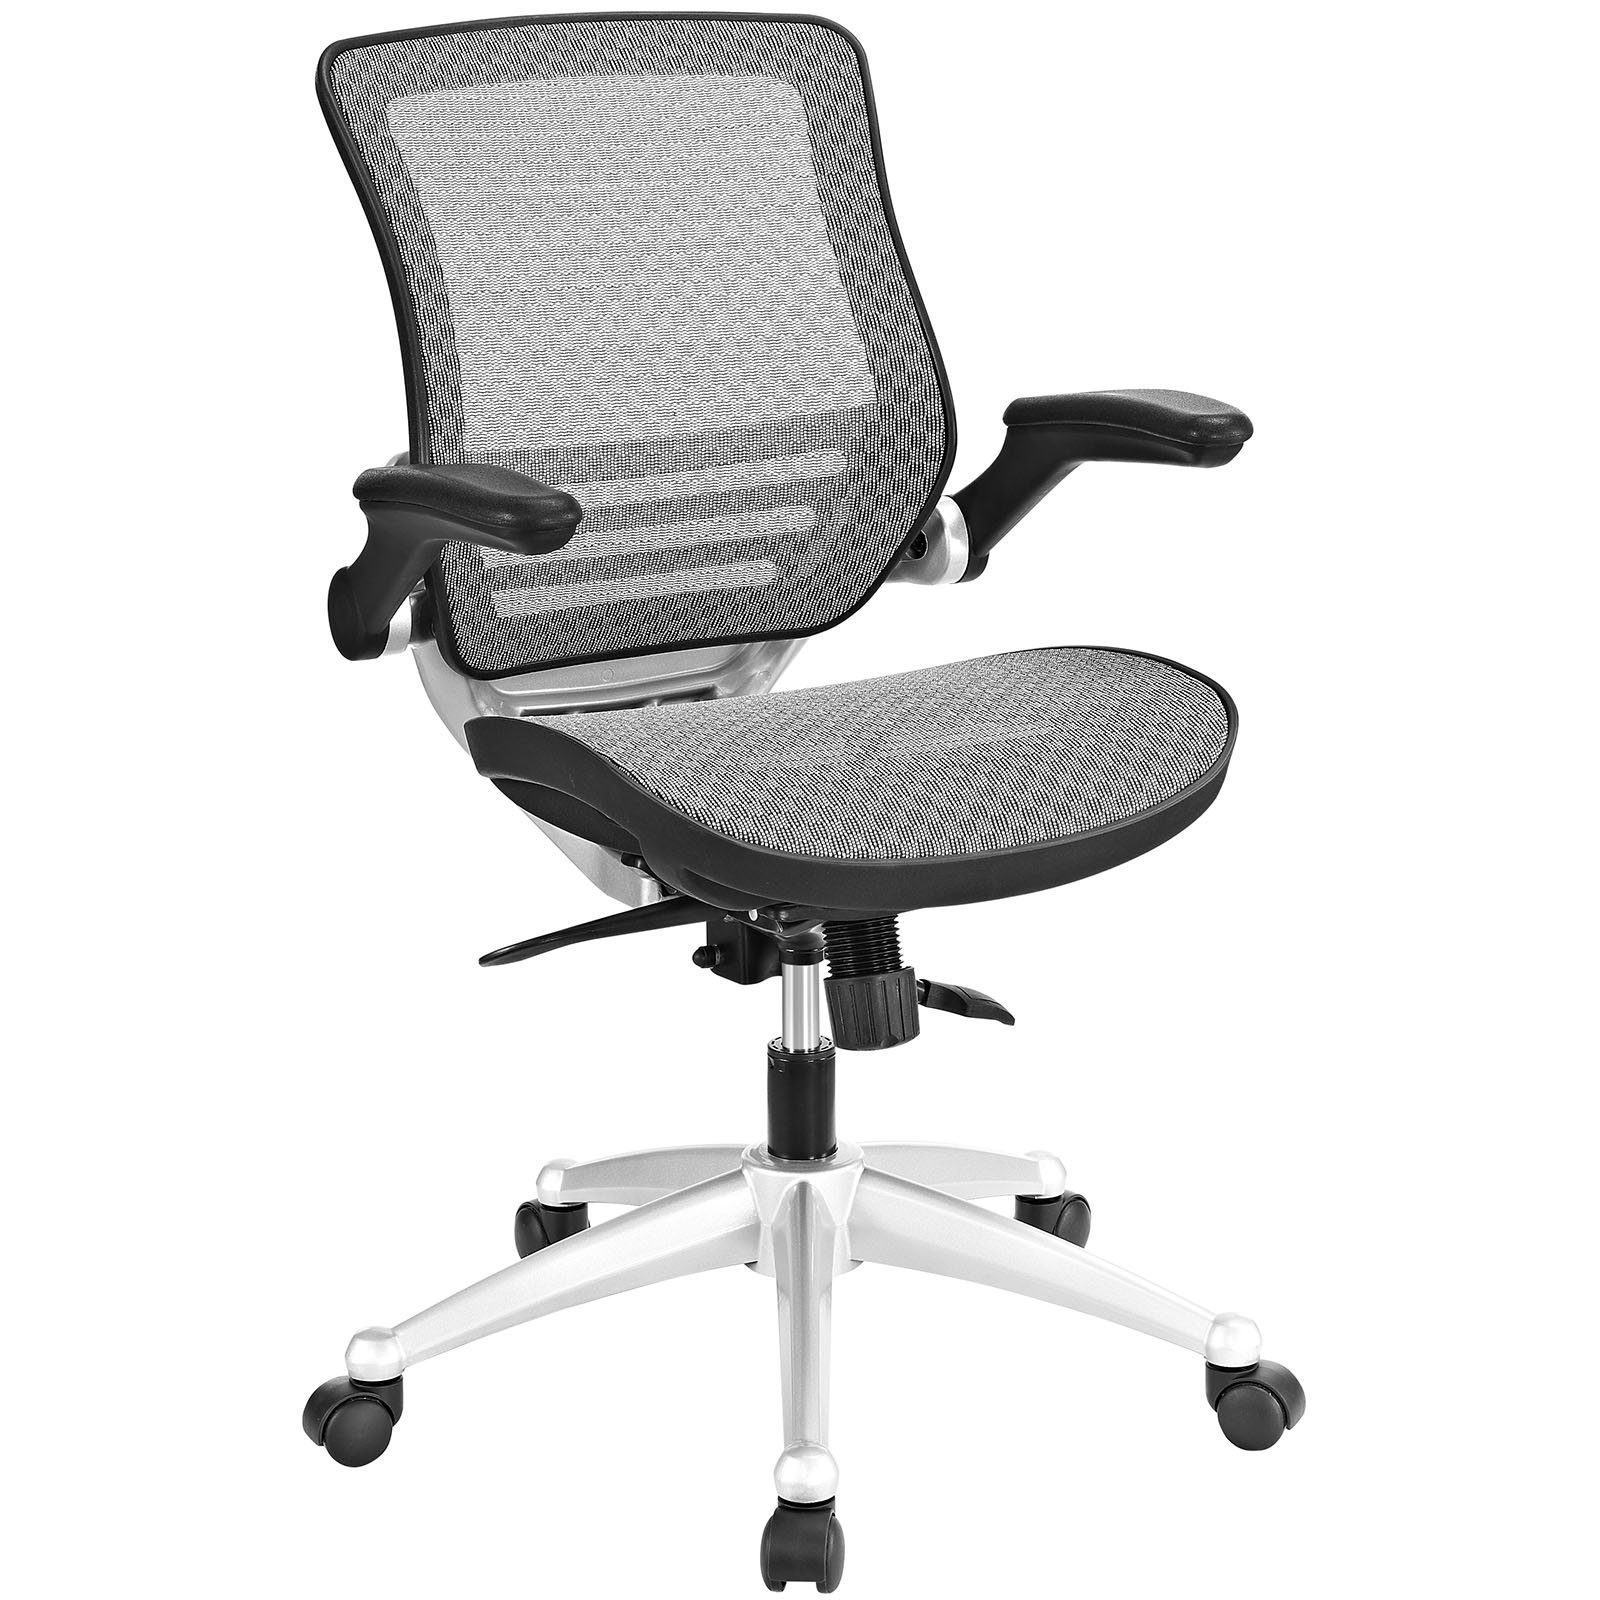 Офисное кресло byroom. Кресло офисное компьютерное эргономичное складное byroom Template vc6007-b. Кресло офисное easy Chair Comfort. Кресло компьютерное mono Mesh. Стул офисный easy Chair 803 VP.